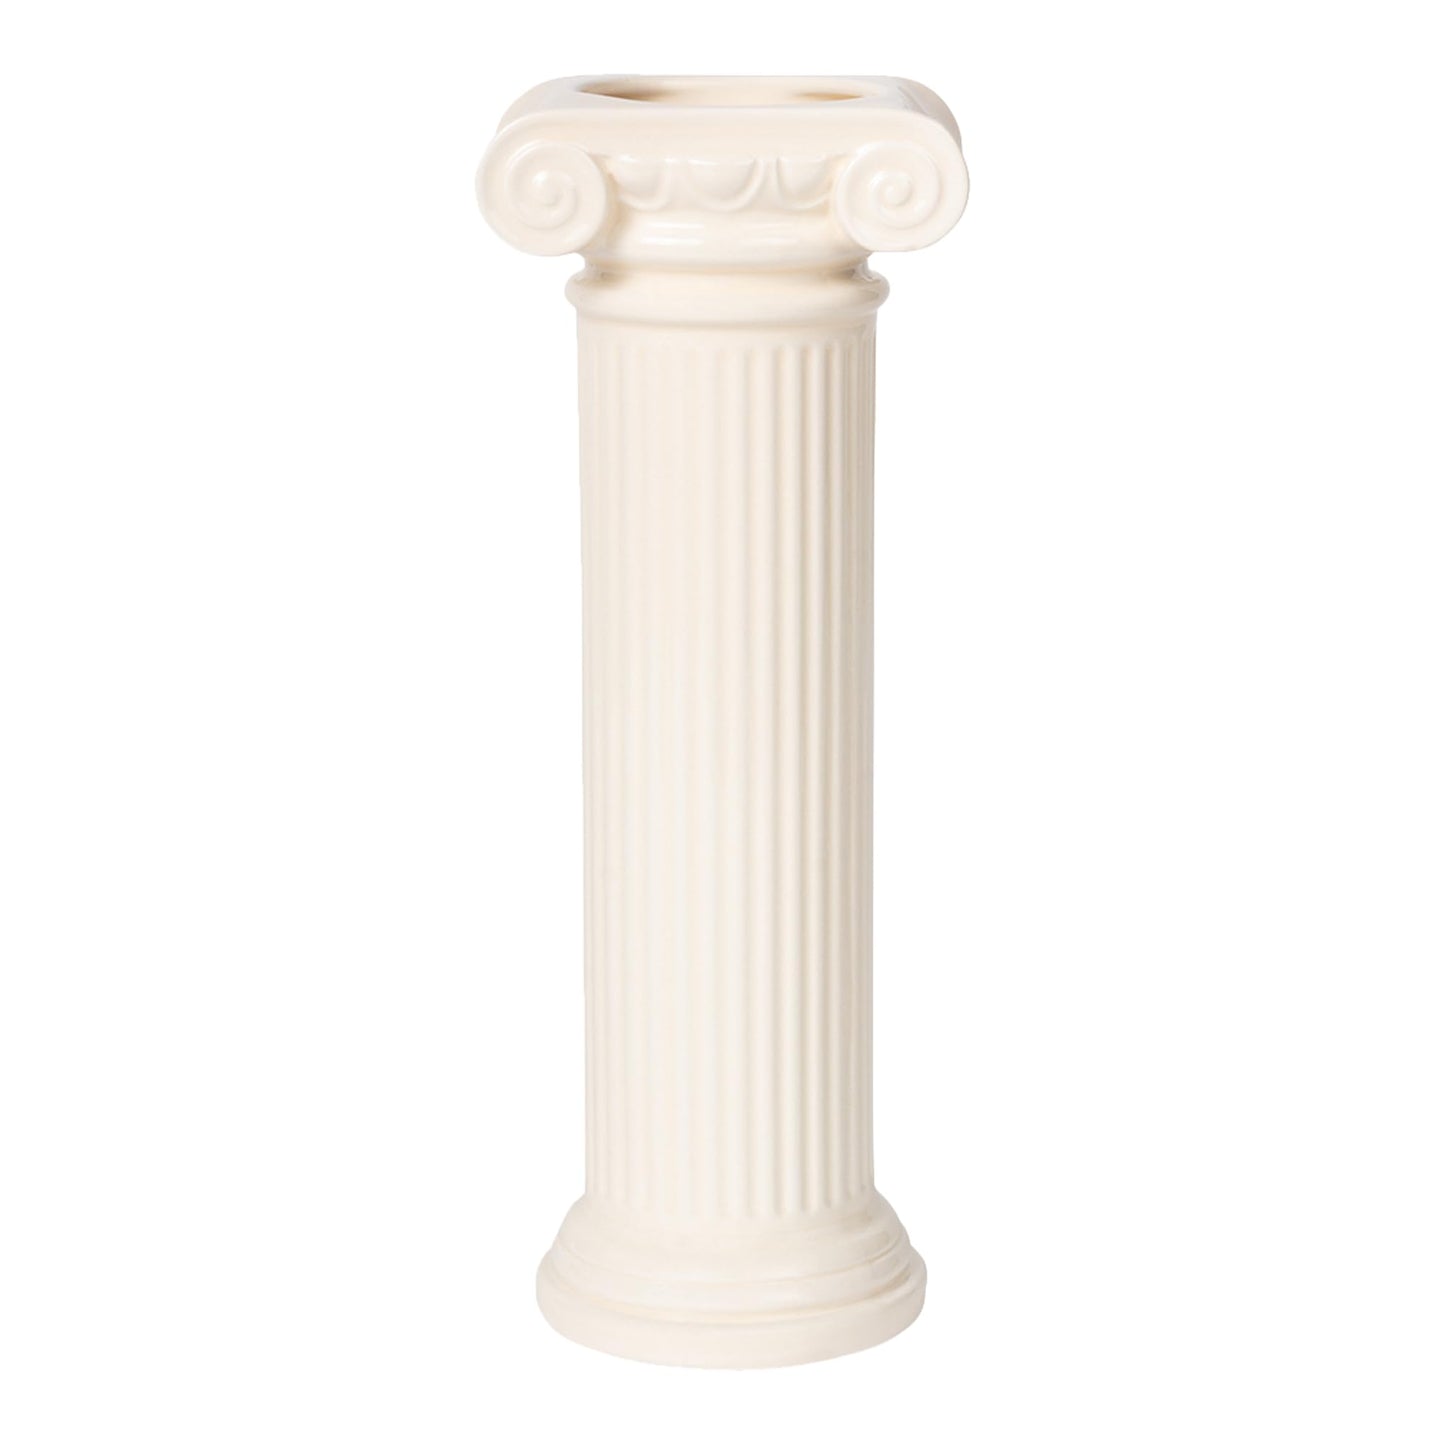 DOIY - Jarrón Decorativo Moderno - Diseño Athena en Forma de Columna Jónica - Fabricado con Cerámica - Jarrón para Flores - Florero Decorativo - Color Blanco - 9,2x8x25 cm